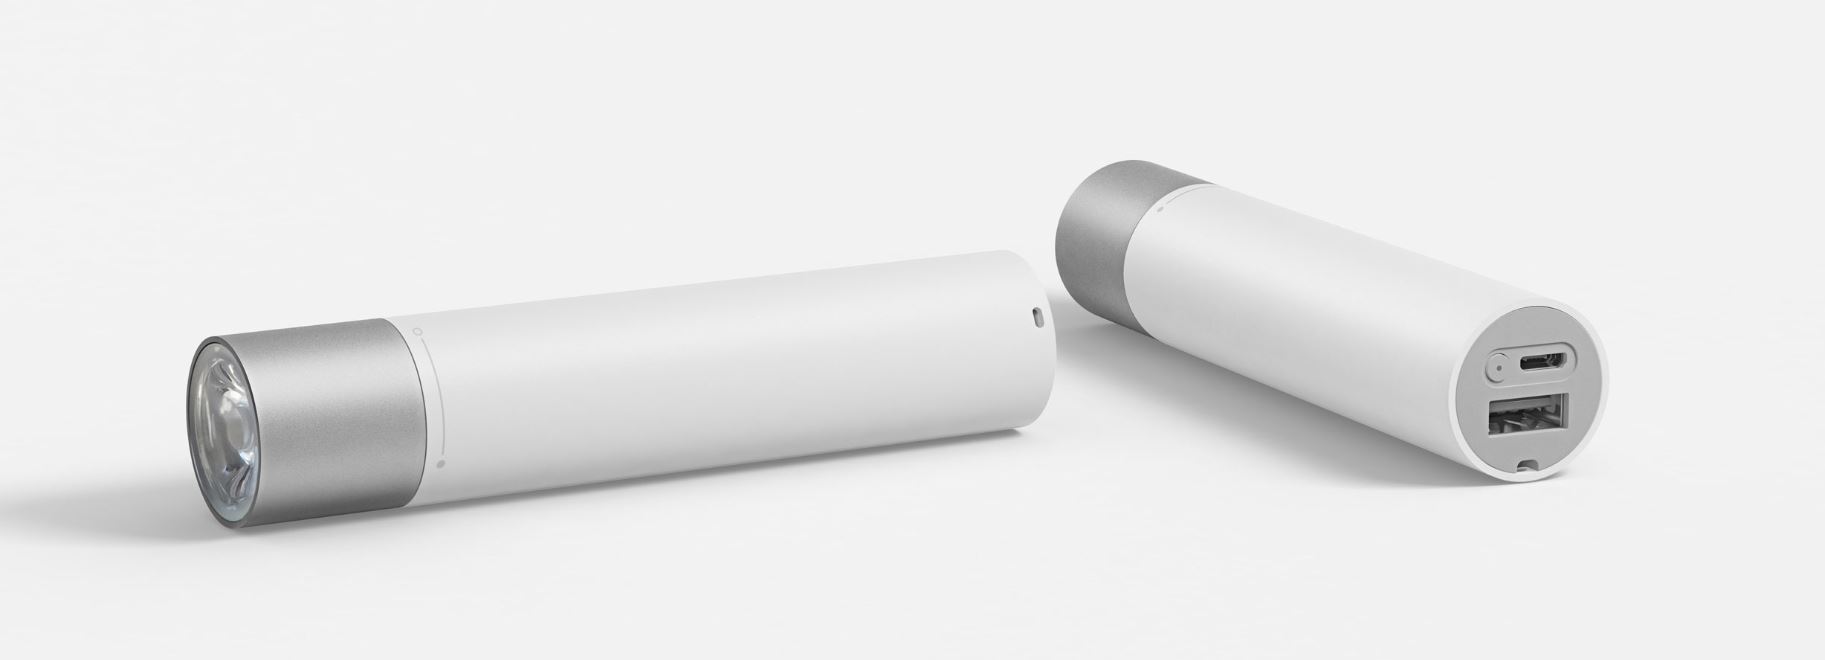 Acheter Batterie externe pour lampe de poche Xiaomi - Lampe de poche Mi  Power Bank 3250mAh - kiboTEK